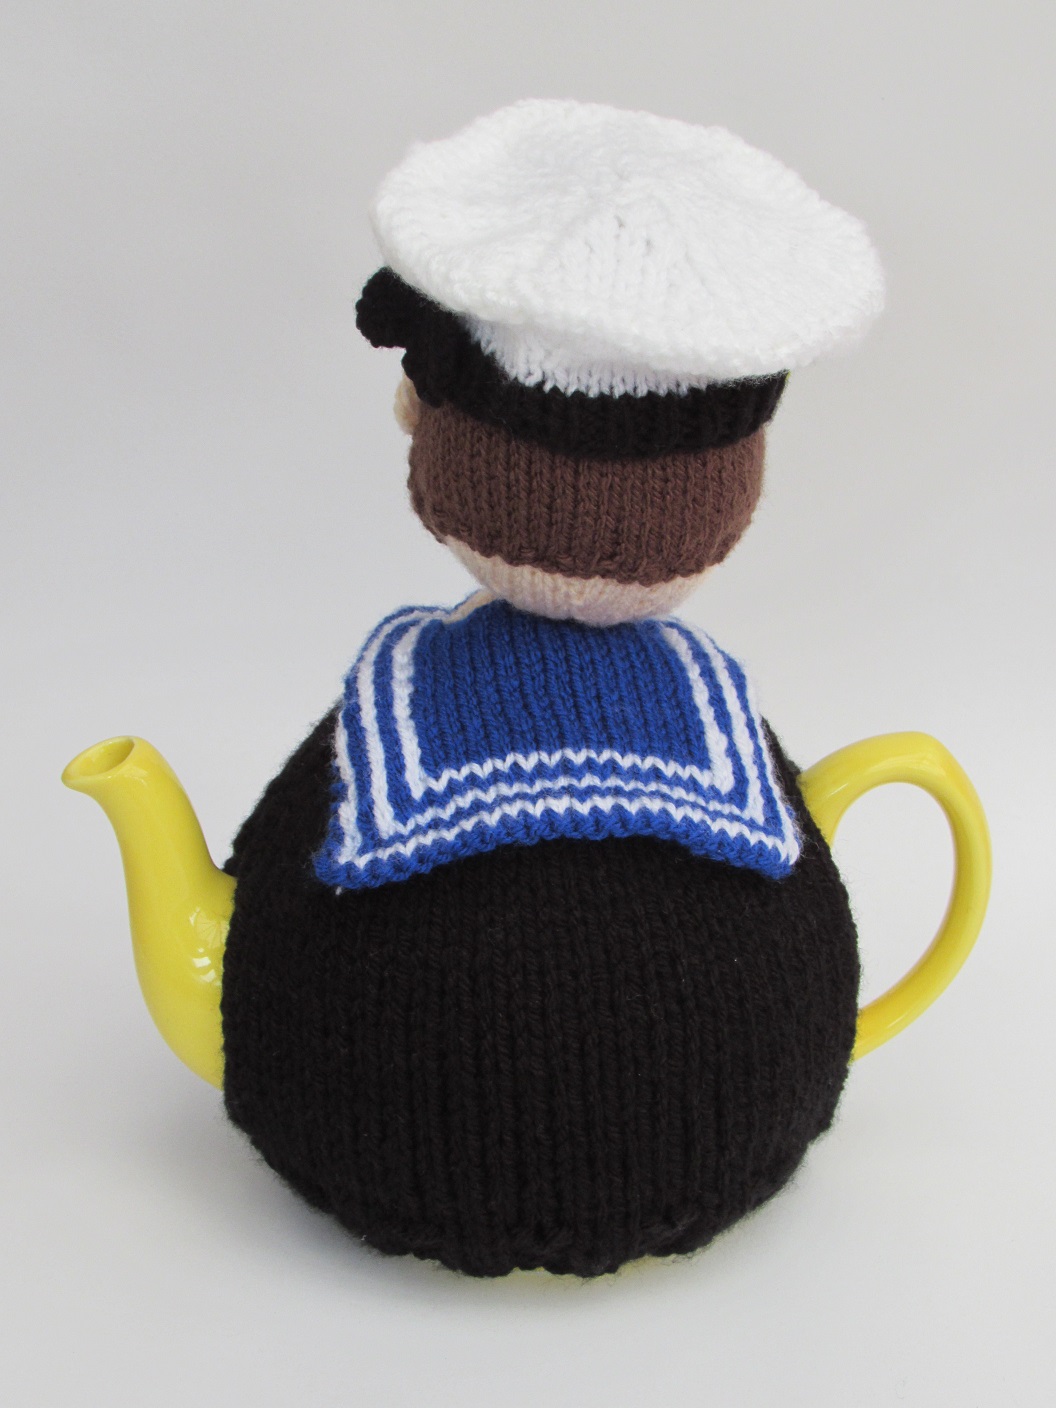 Royal Navy Sailor knitting pattern